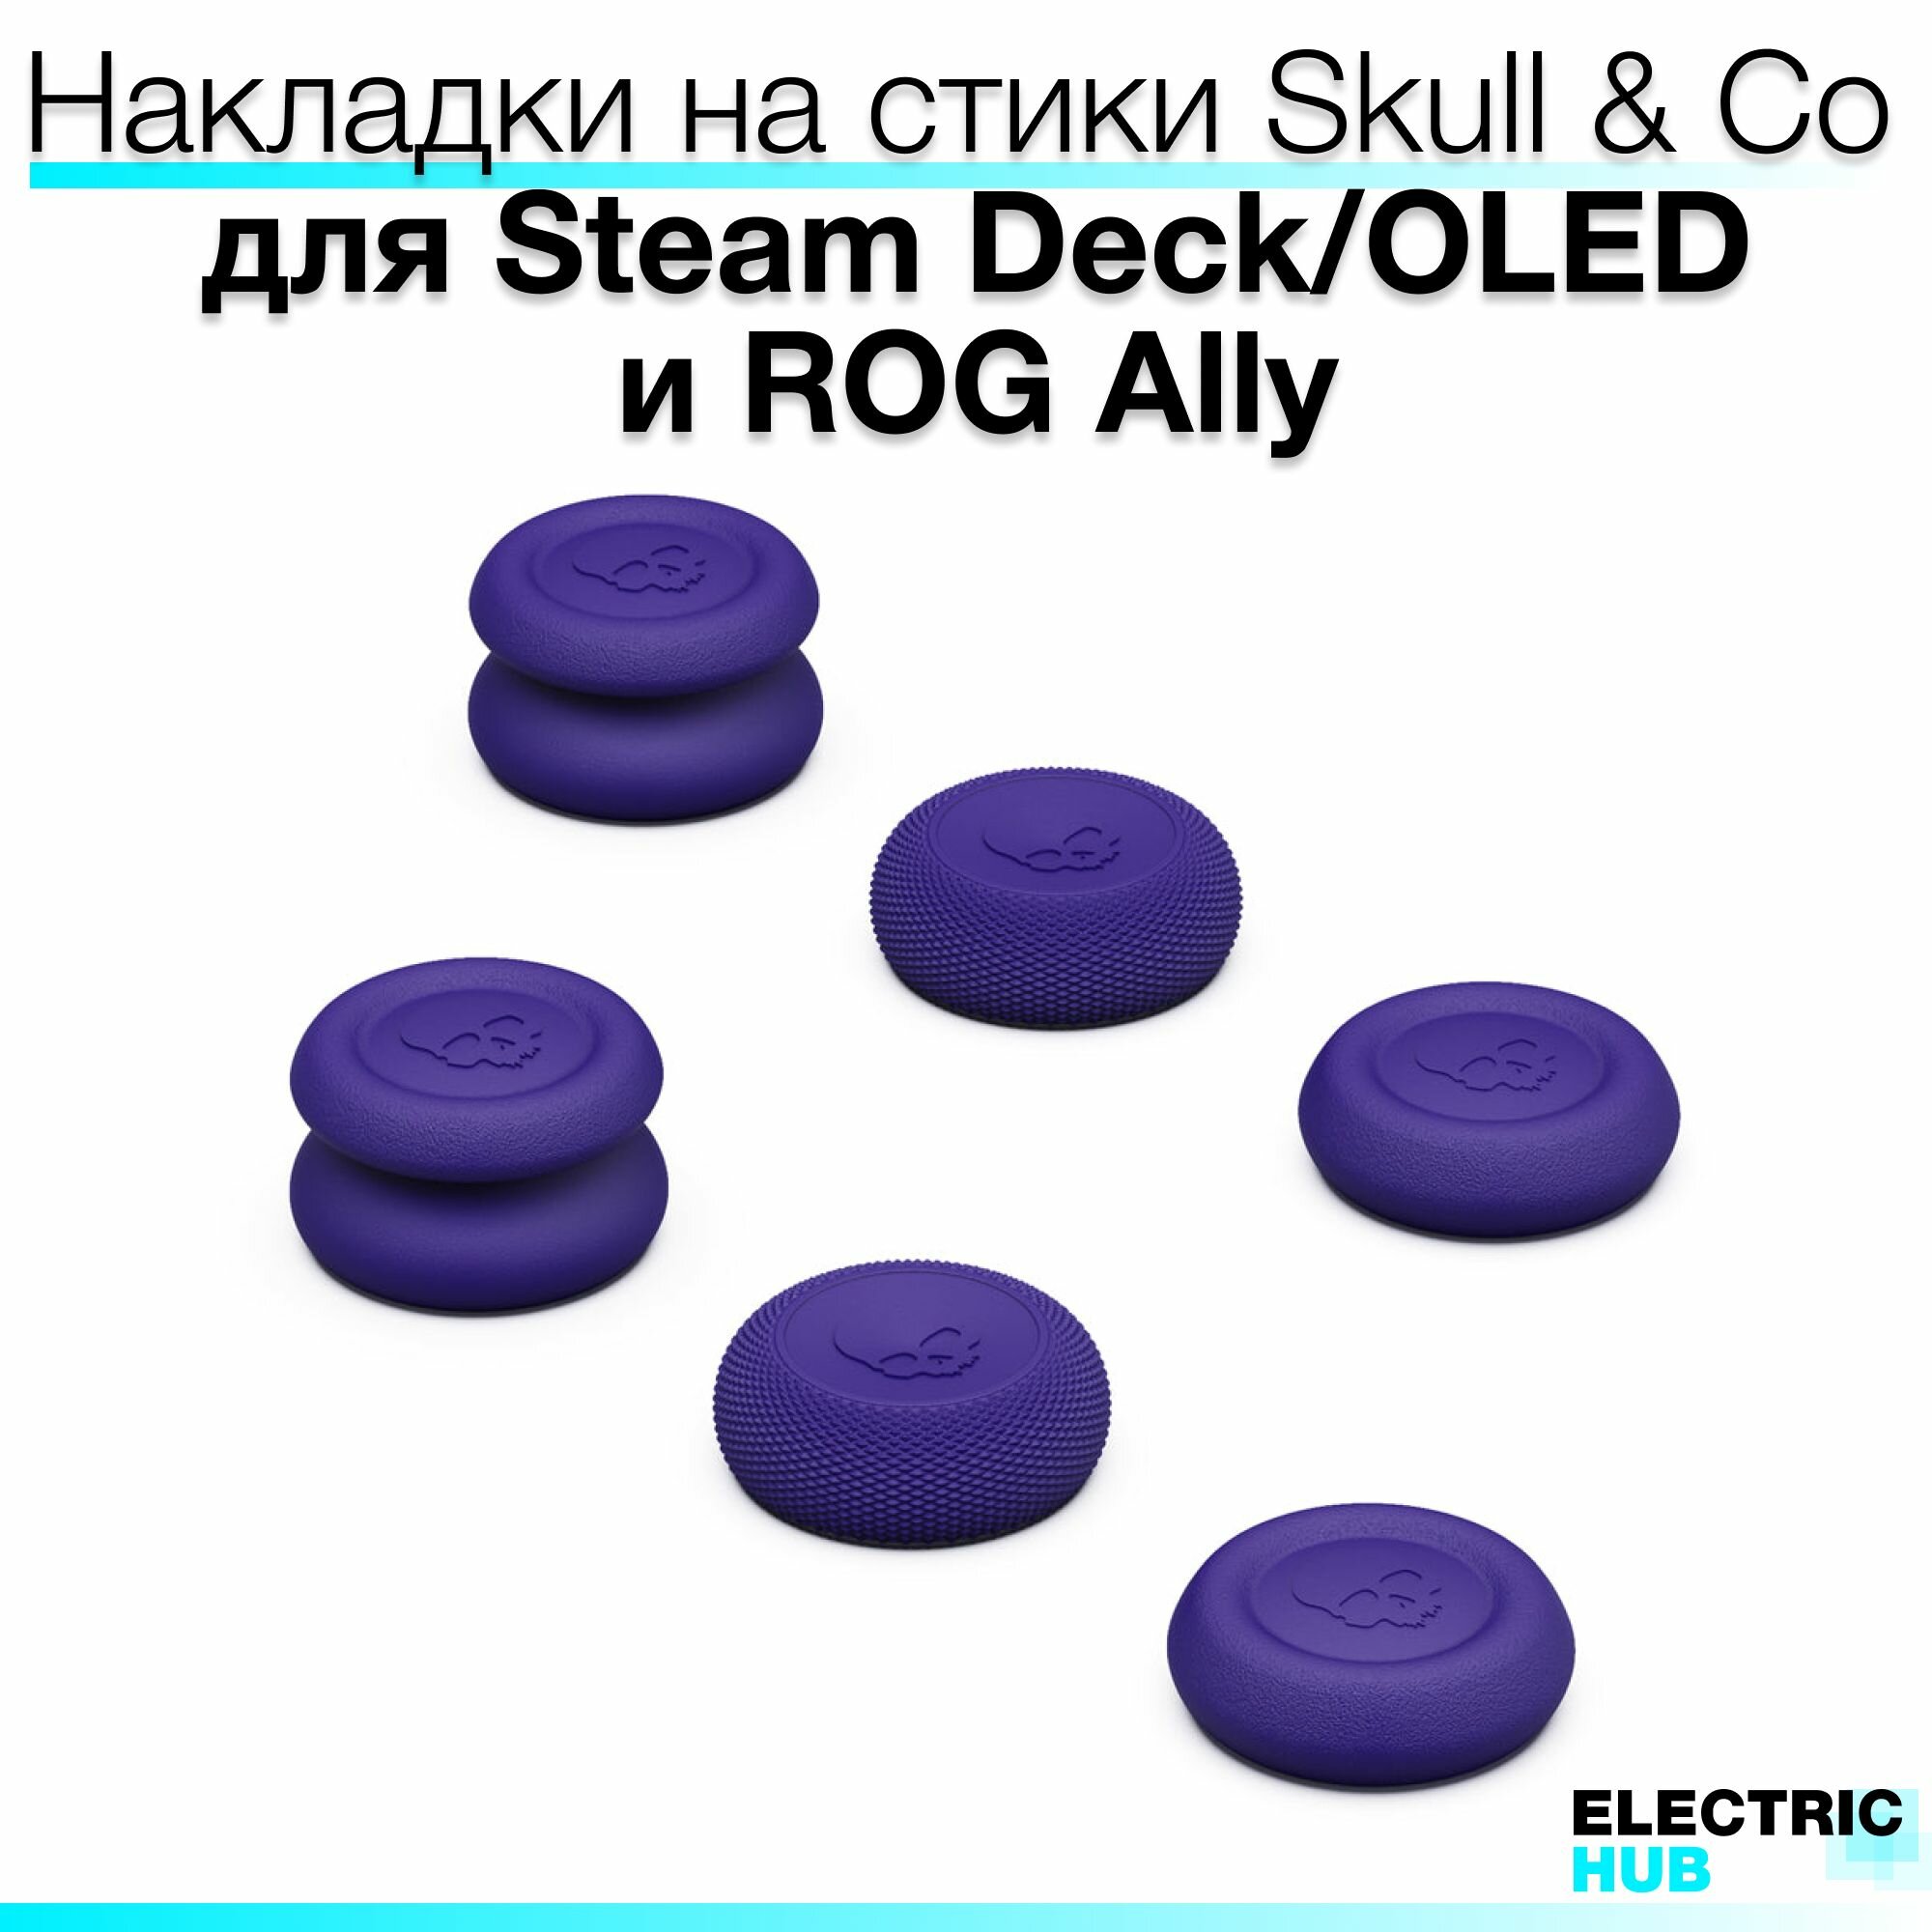 Премиум накладки Skull & Co на стики для консолей Steam Deck/OLED/ROG Ally комплект из 6 штук цвет Фиолетовый (Galactic Purple)